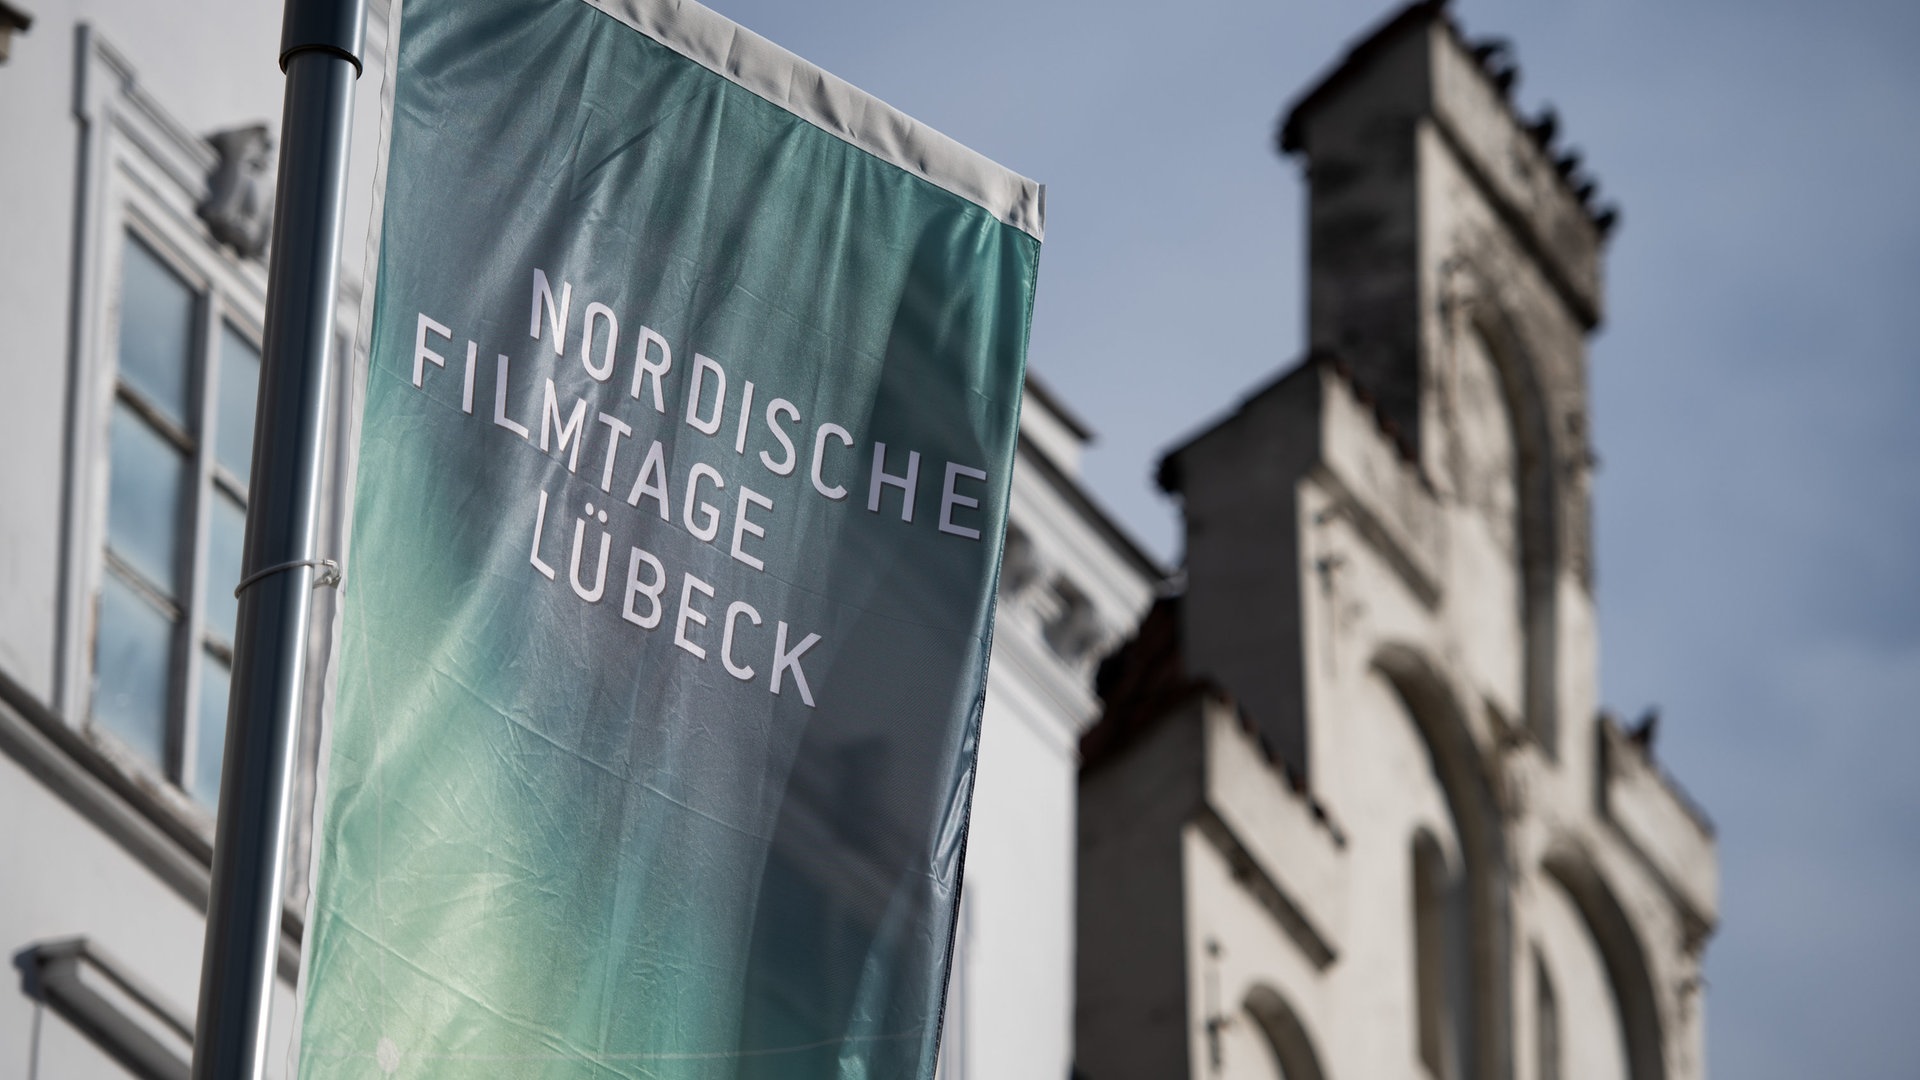 Auftakt bei den 63. Nordischen Filmtagen in Lübeck  - Kultur - Film  - Festivals